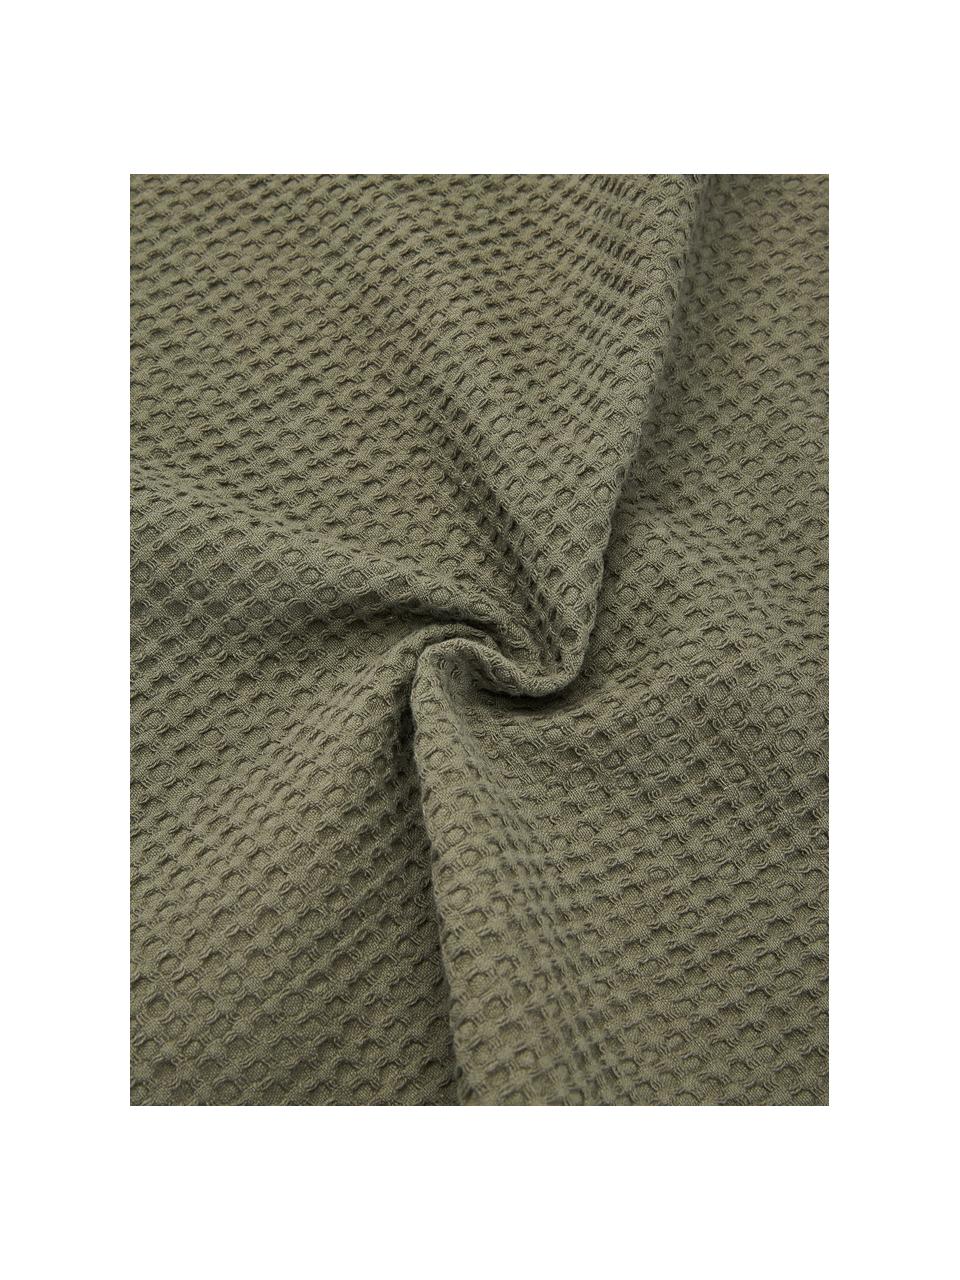 Waffelpiqué-Tagesdecke Nordic aus Baumwolle in Grün, 100 % Baumwolle, Grün, B 260 x L 280 cm (für Betten bis 200 x 200 cm)